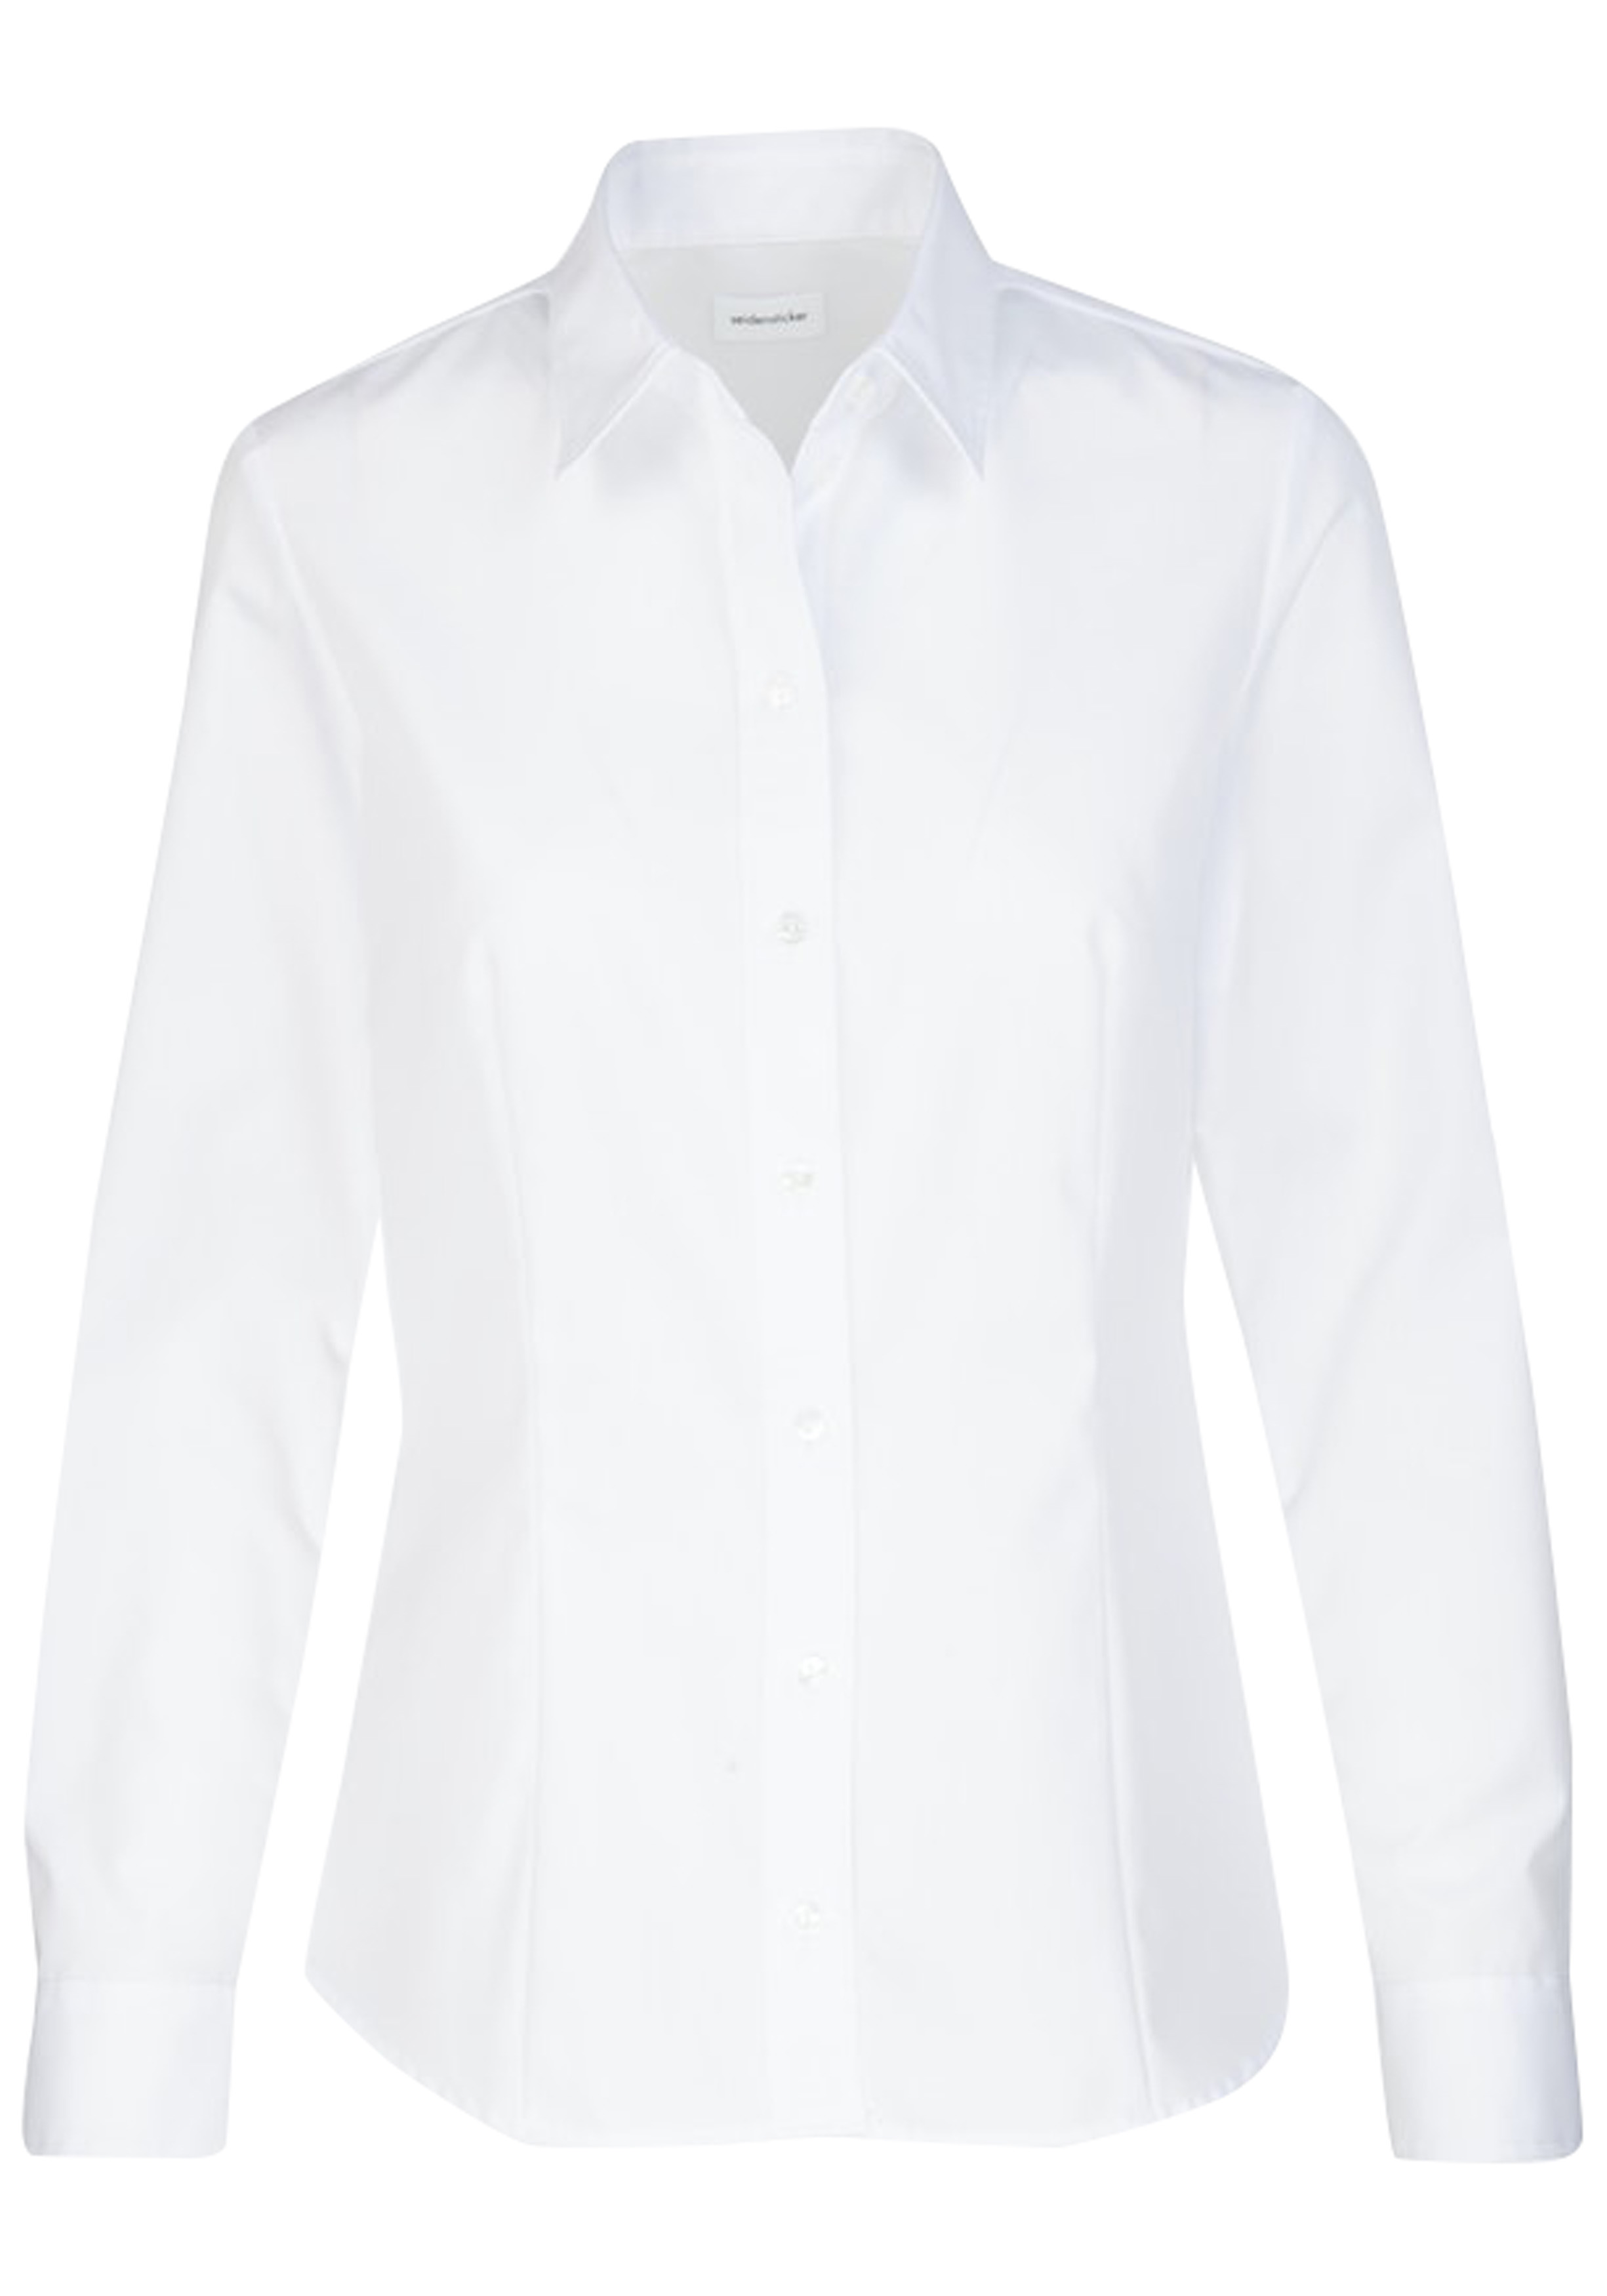 gemakkelijk voor de helft Enzovoorts Seidensticker dames blouse regular fit, wit - Shop de nieuwste voorjaarsmode